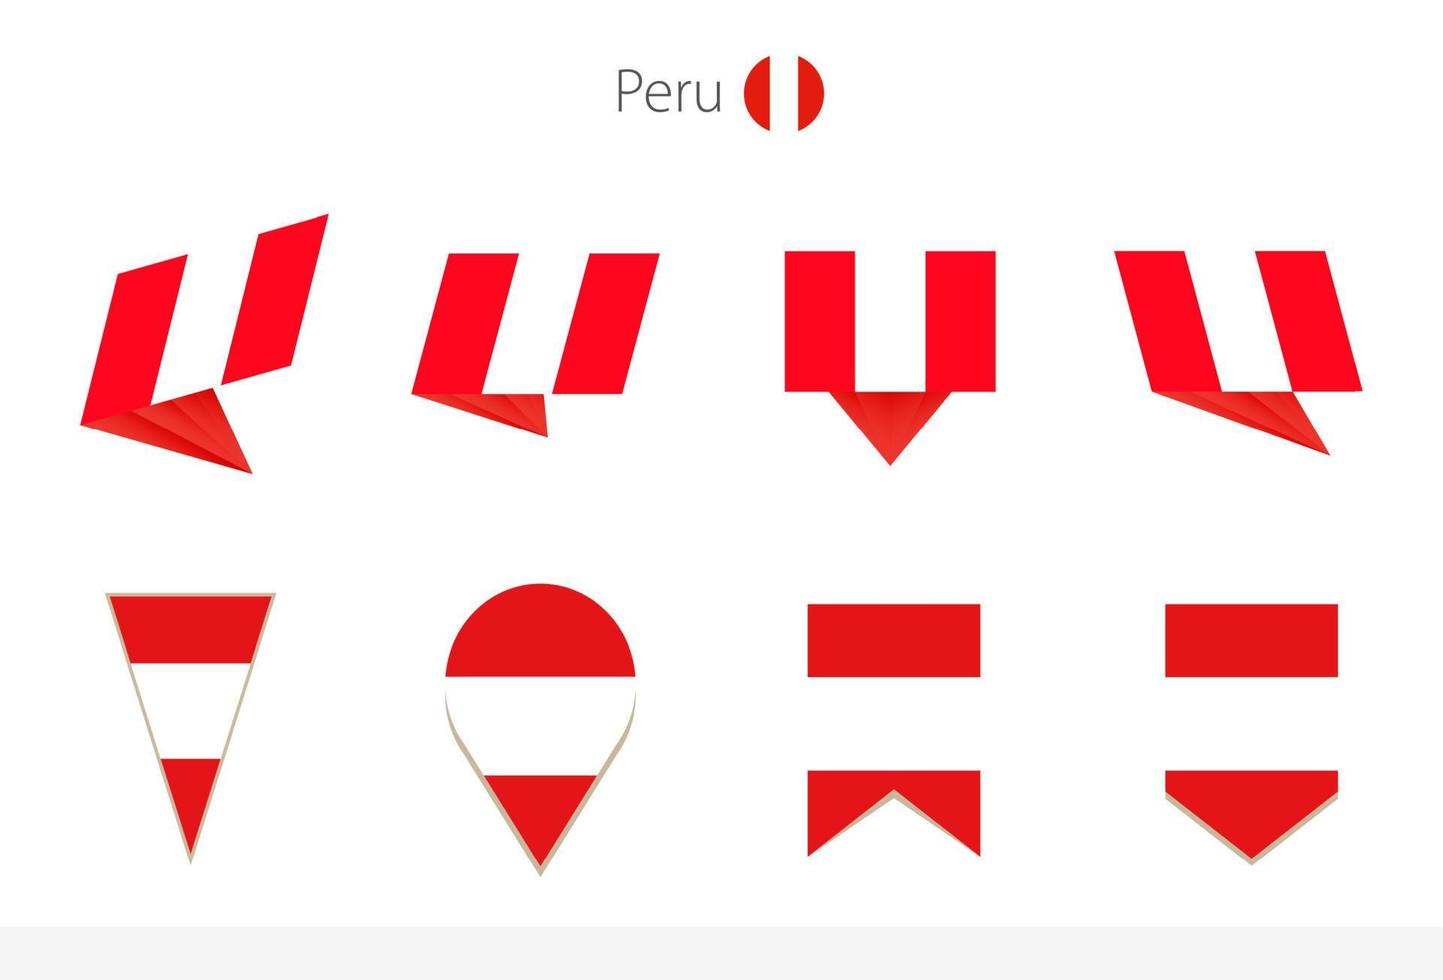 peru-nationalflaggensammlung, acht versionen von peru-vektorflaggen. vektor